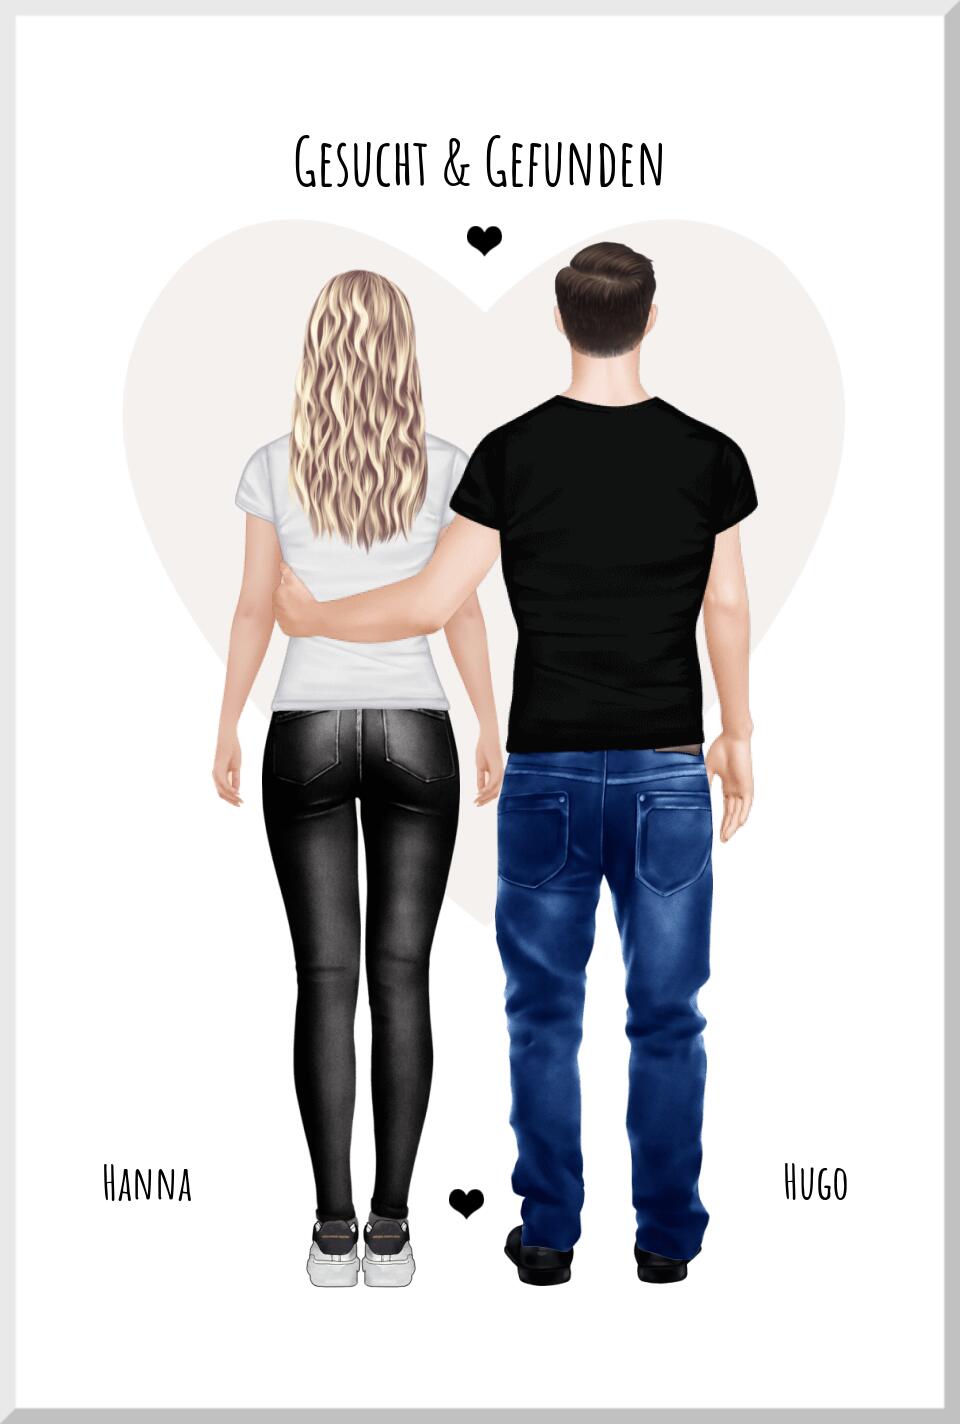 Gesucht & gefunden - personalisiertes Poster Geschenk für Paare - Partner - Partnerin Partnergeschenk